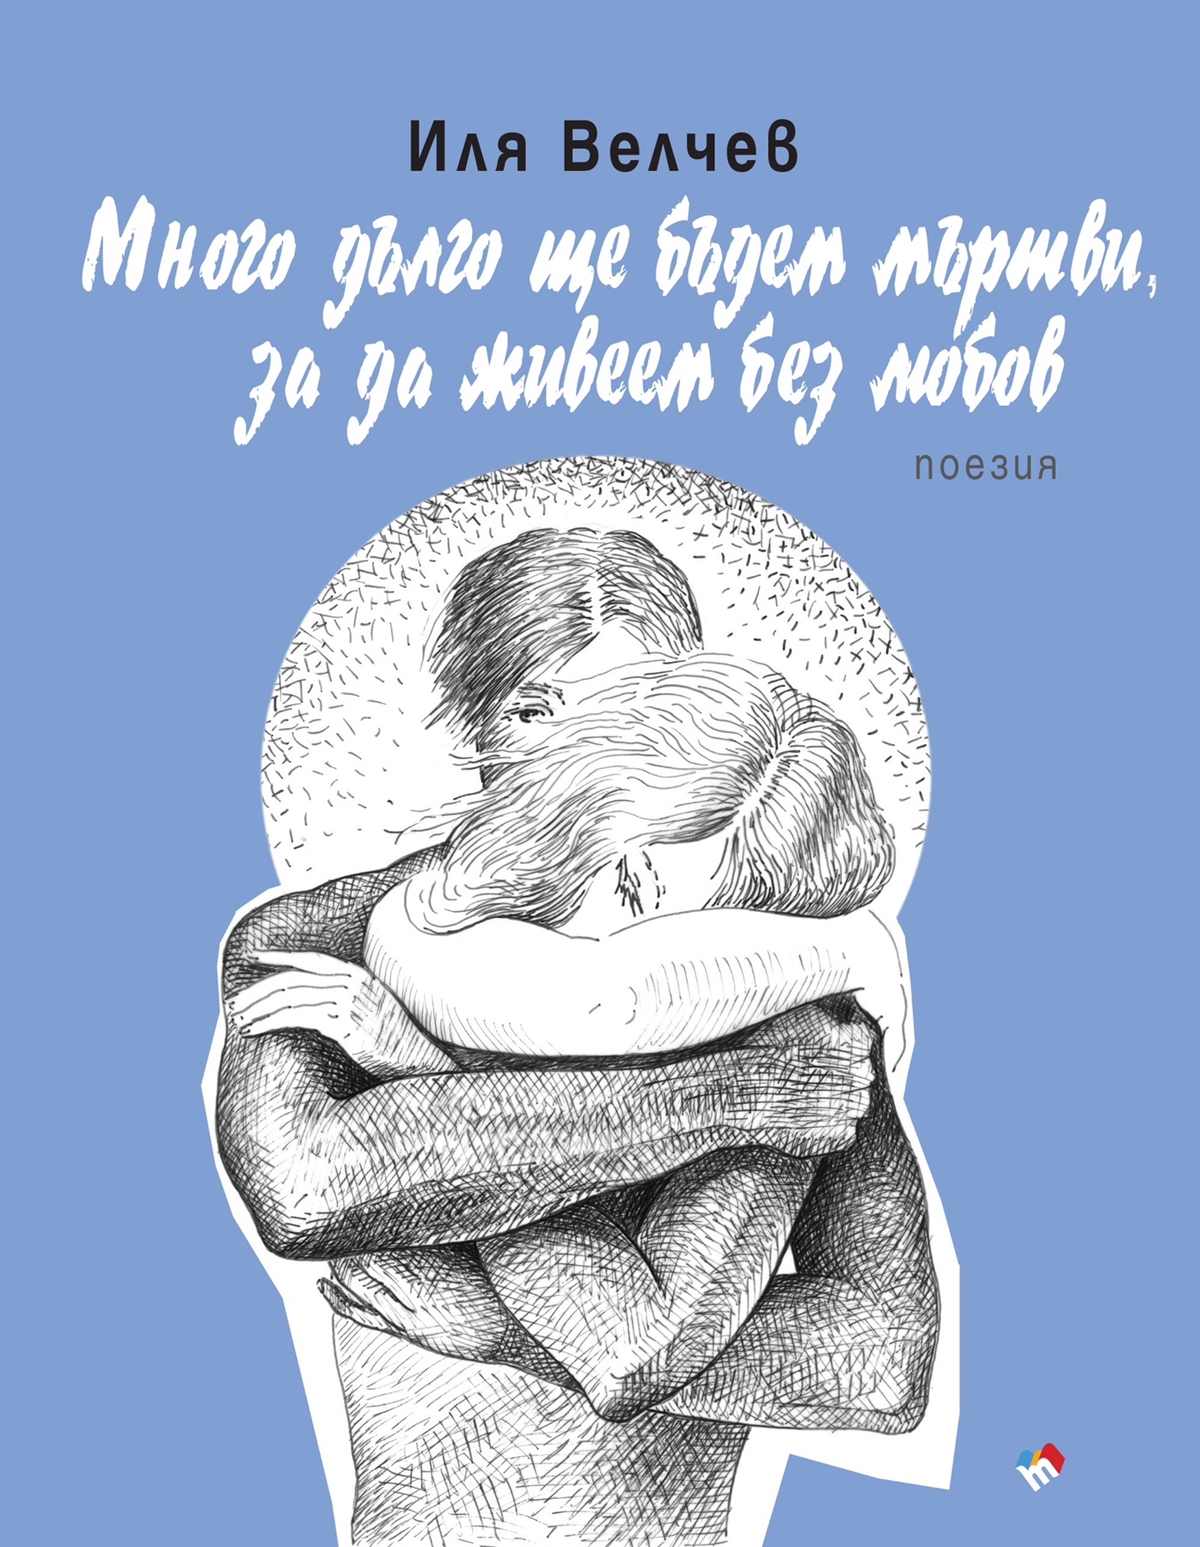 Стиховете на Иля Велчев нарисувани  от музата  му Милена